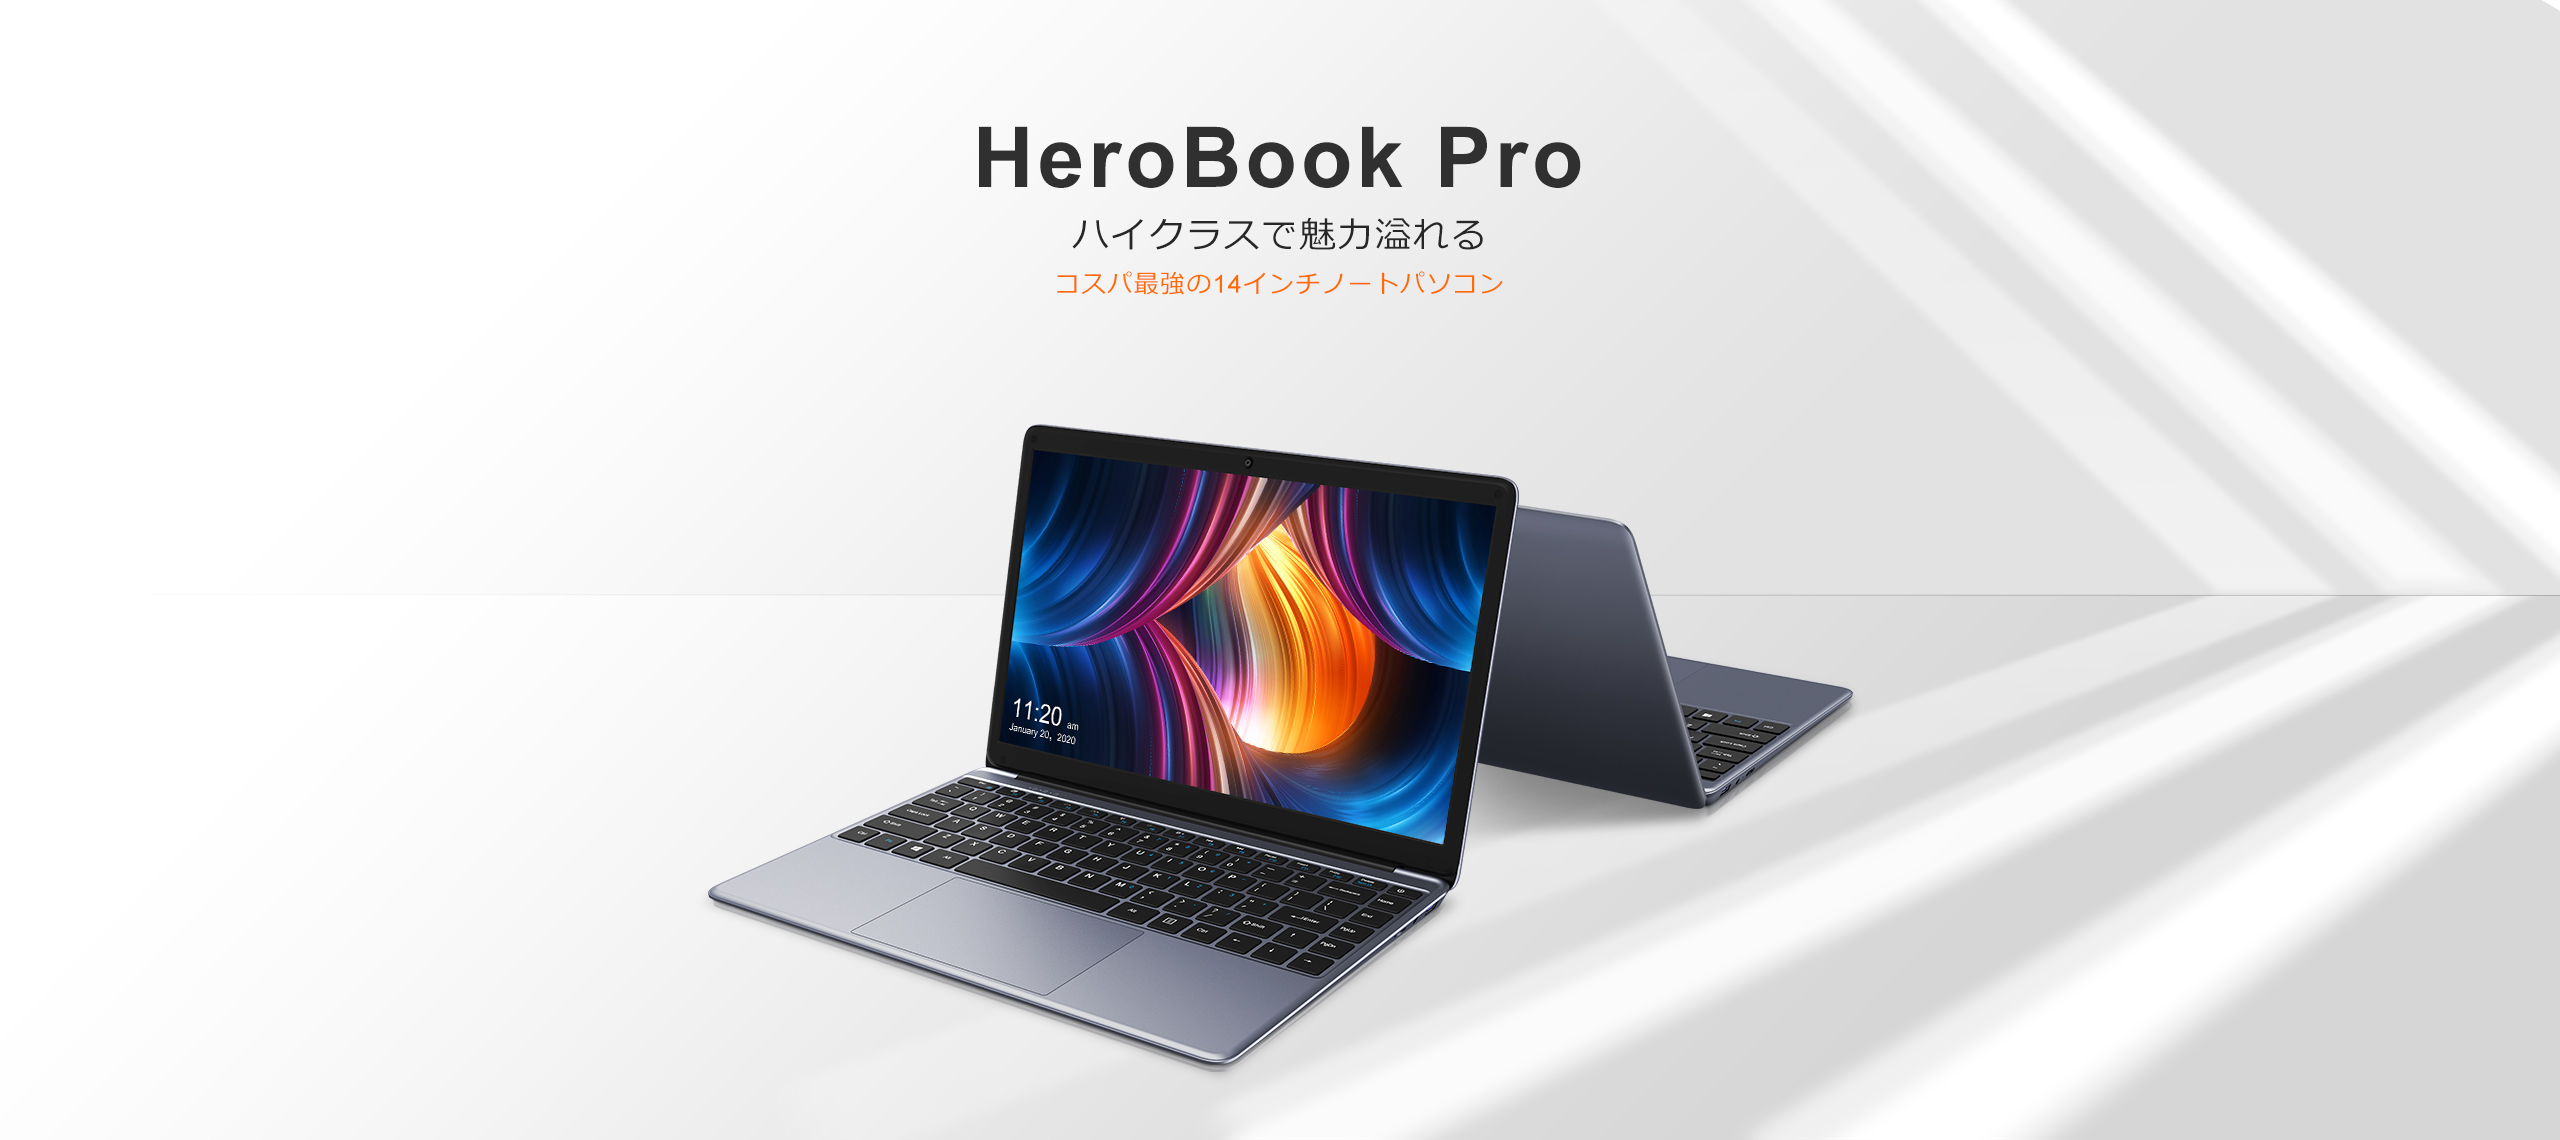 CHUWI HeroBook Proノートパ ソコン 14.1インチノートPC